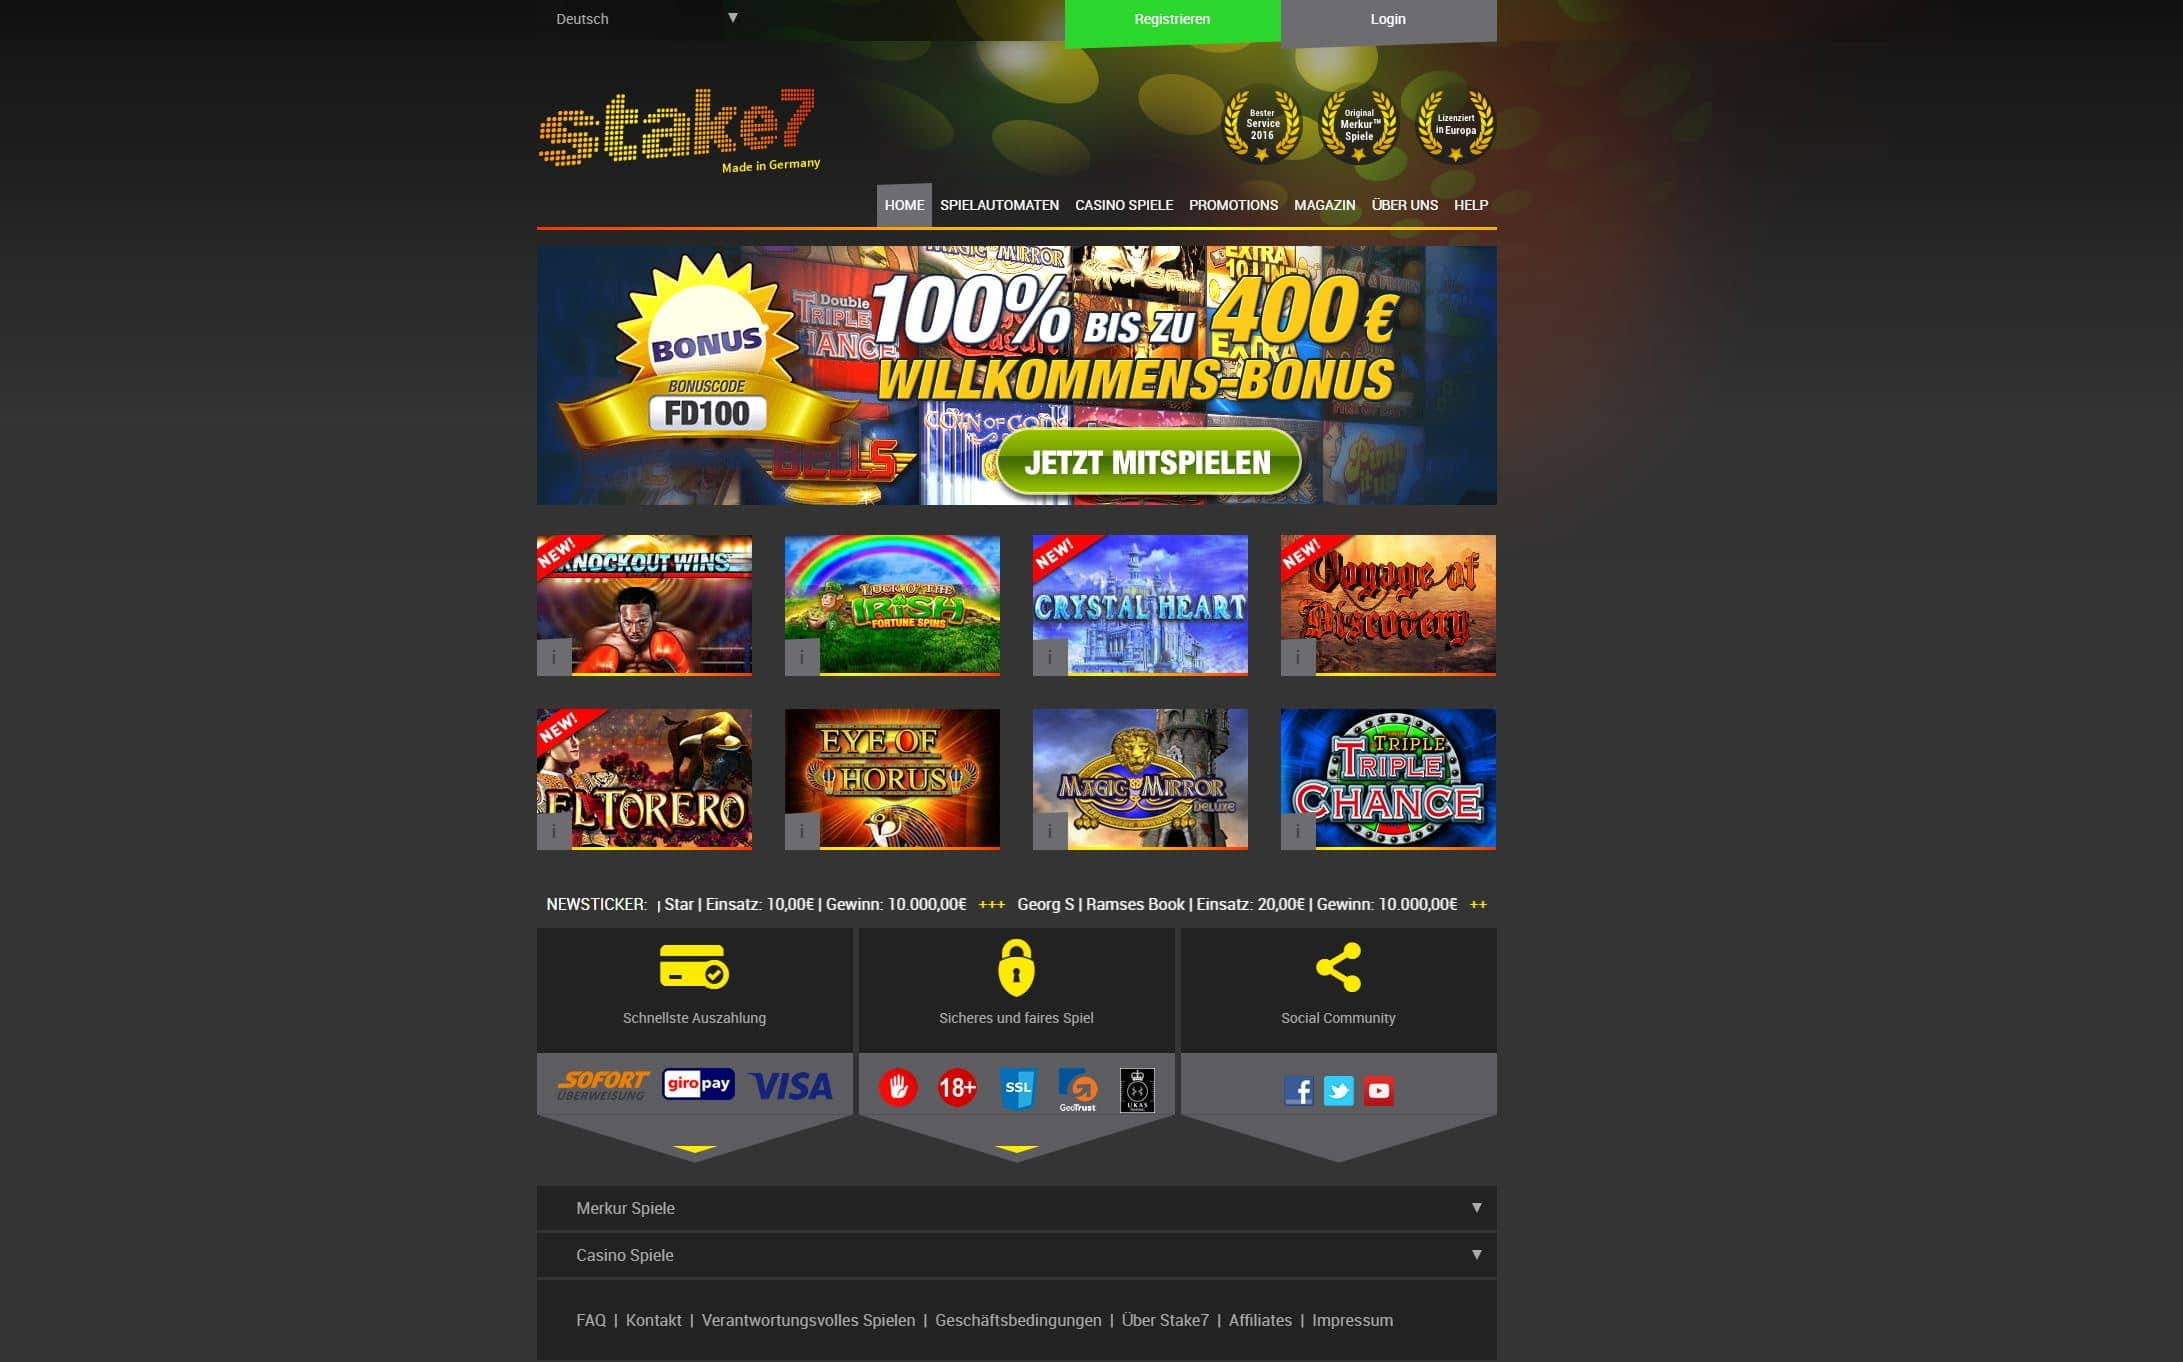 Online casino deutschland bonus code vabank казино бонус